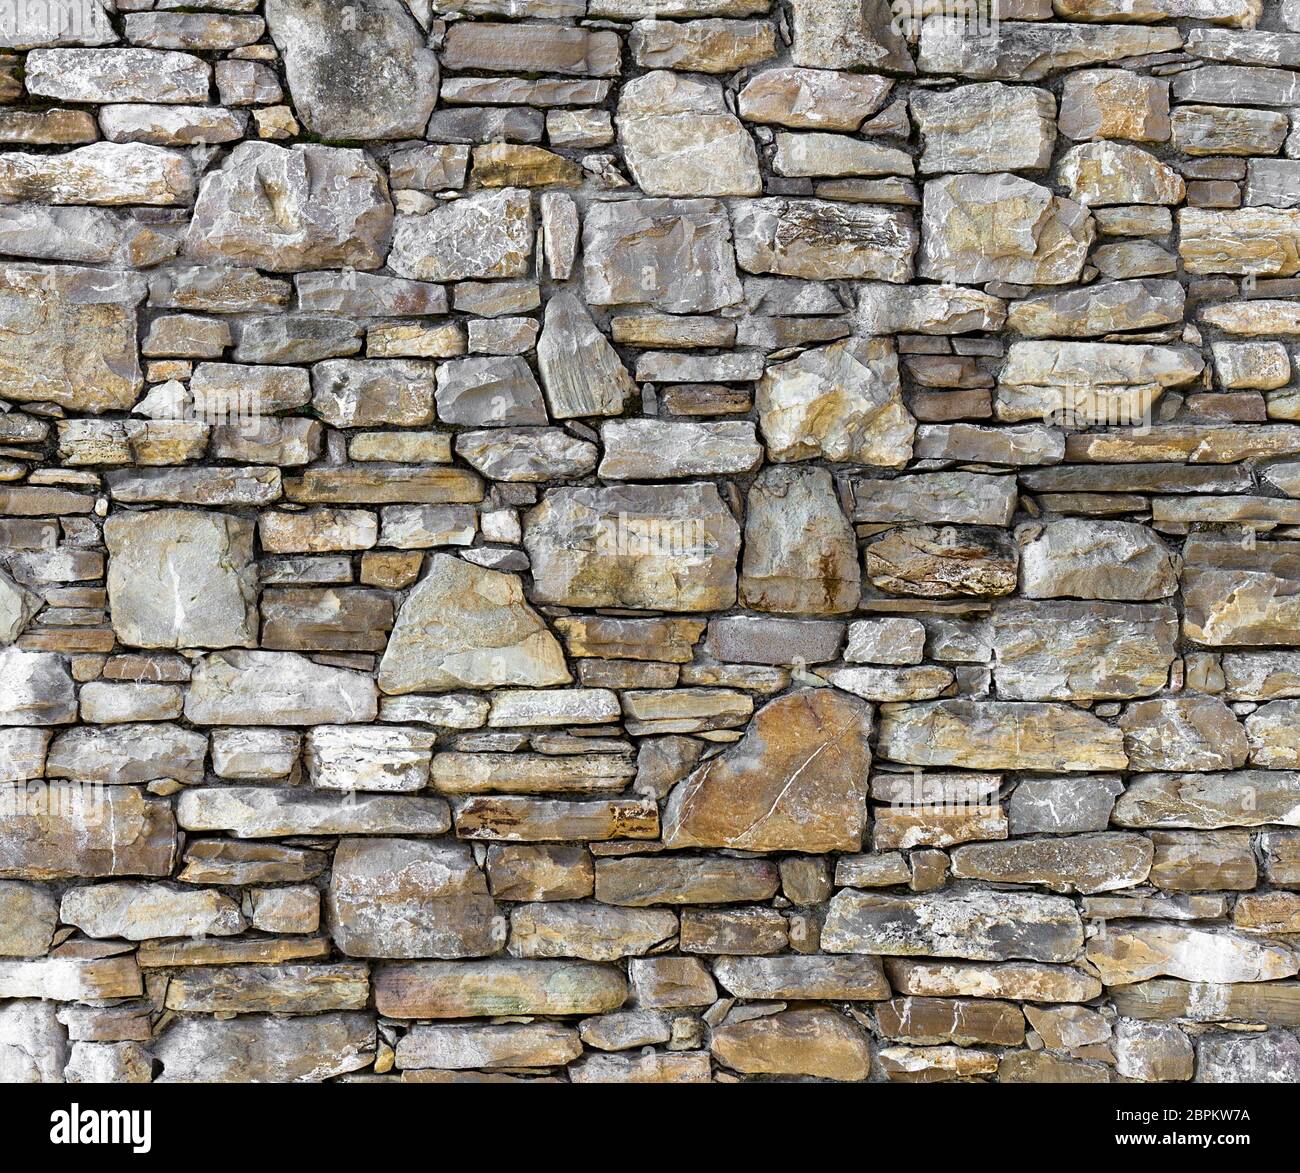 alcanzar Despertar Ciencias Sociales Pared de piedra rústica. Fondo de una pared con piedras irregulares  Fotografía de stock - Alamy